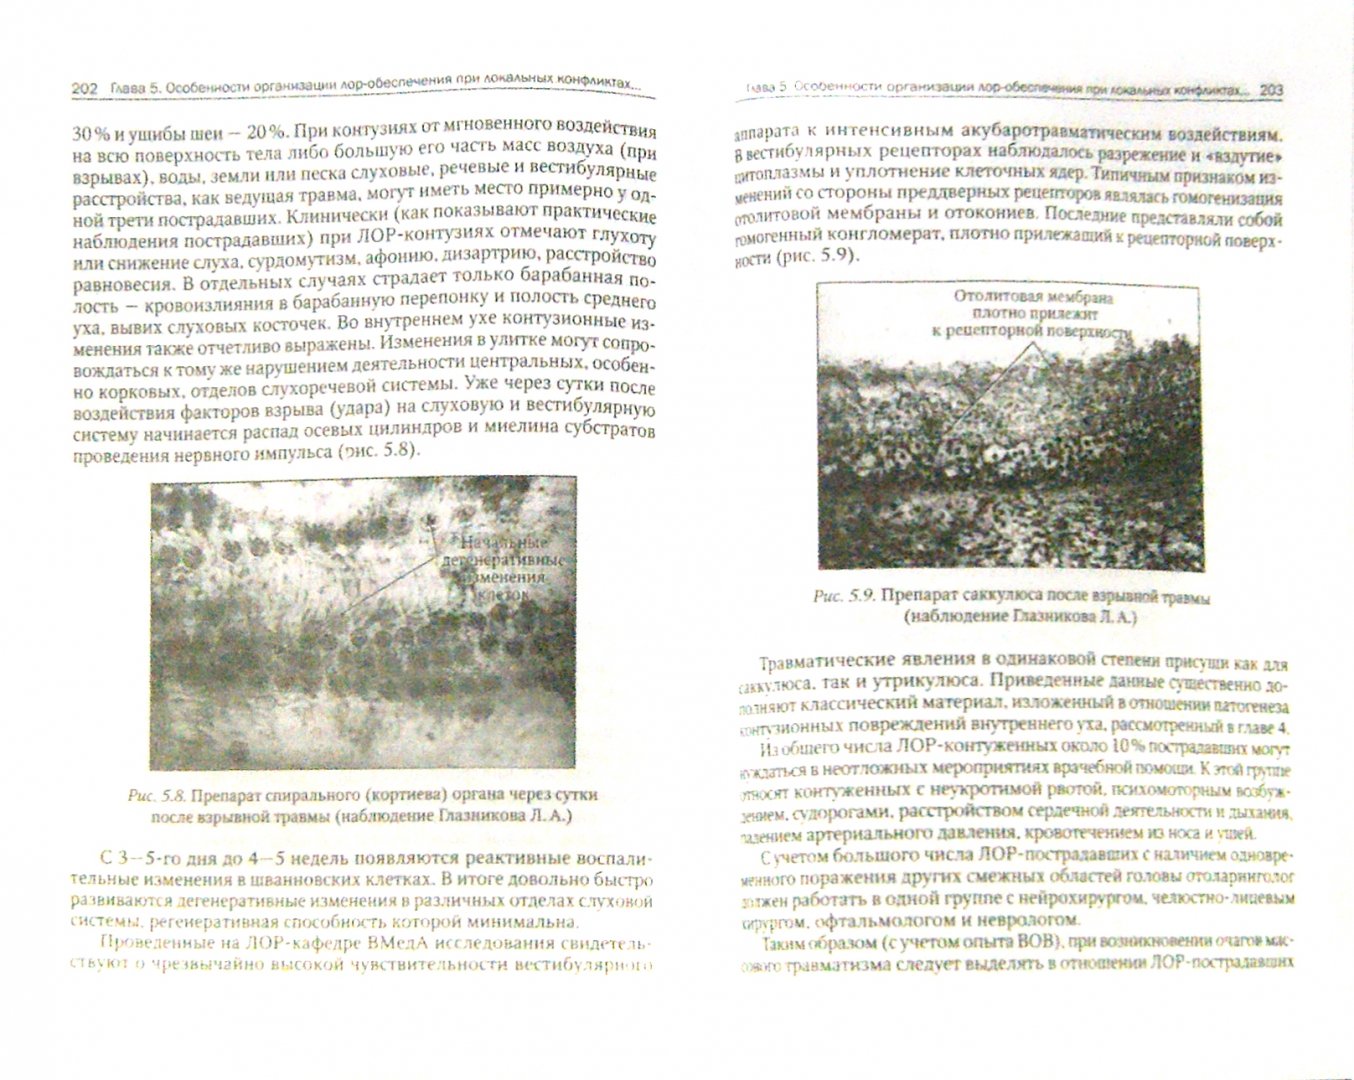 Иллюстрация 1 из 5 для Военная оториноларингология - Горохов, Шелепов, Янов | Лабиринт - книги. Источник: Лабиринт